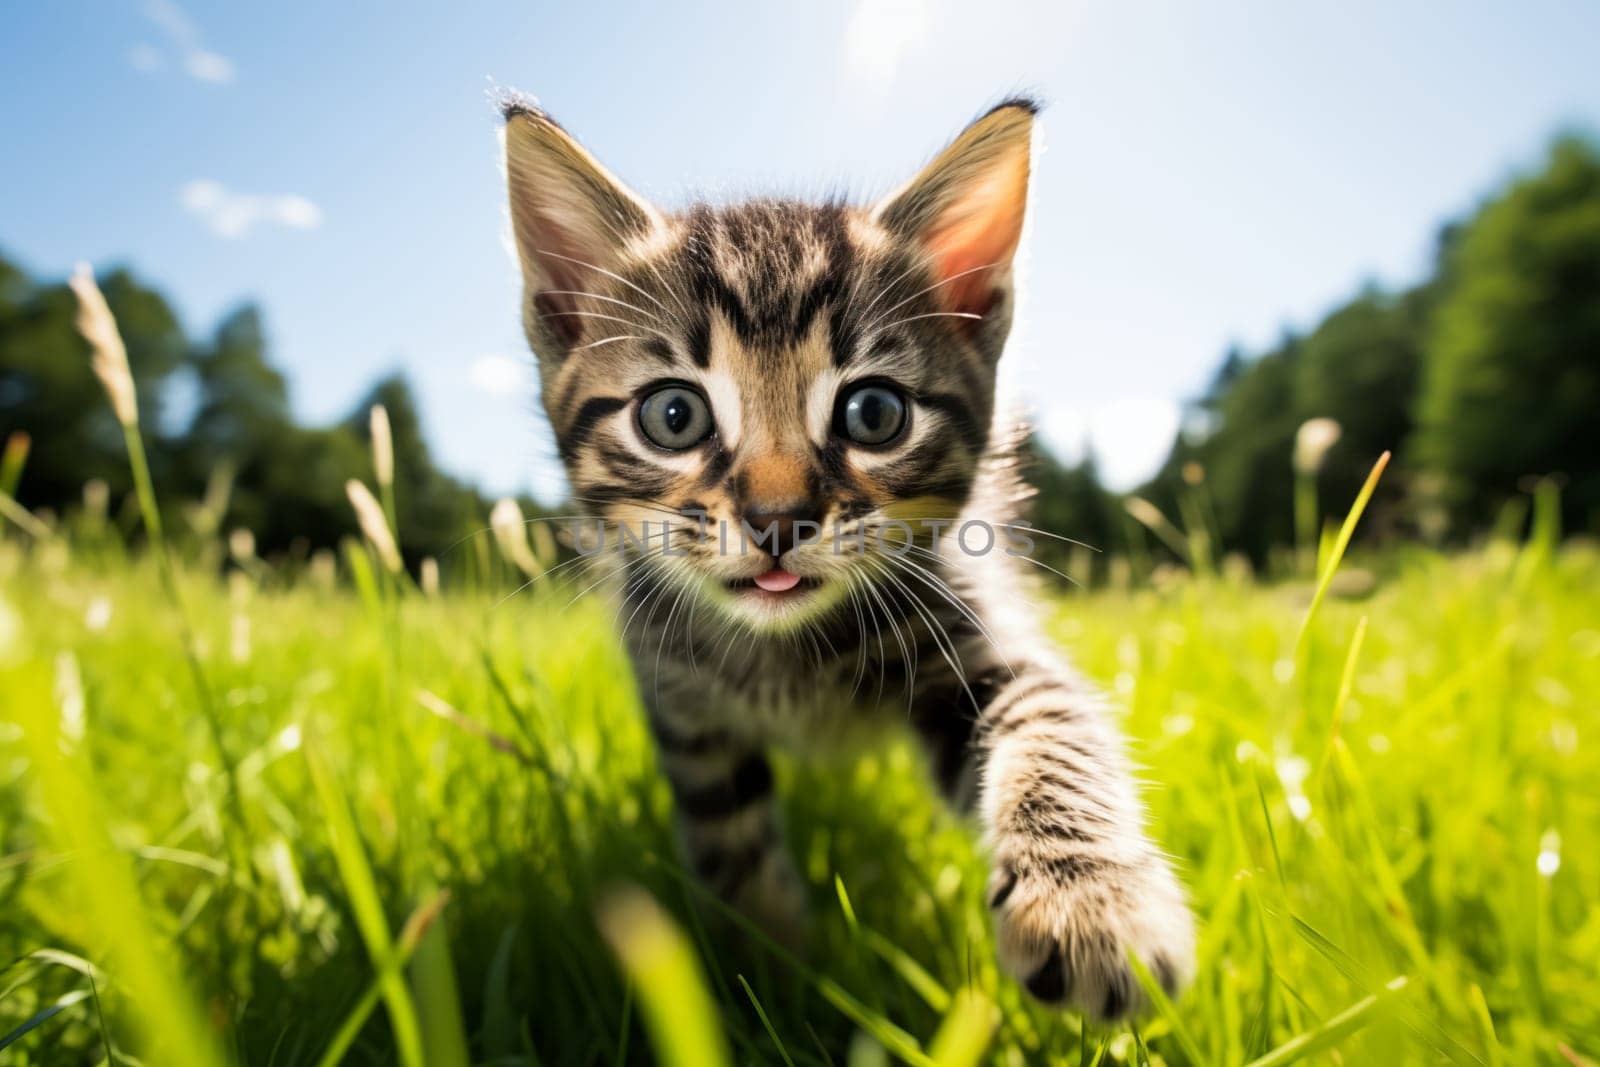 Playful Cute Kitten in Sunlit Grass by dimol